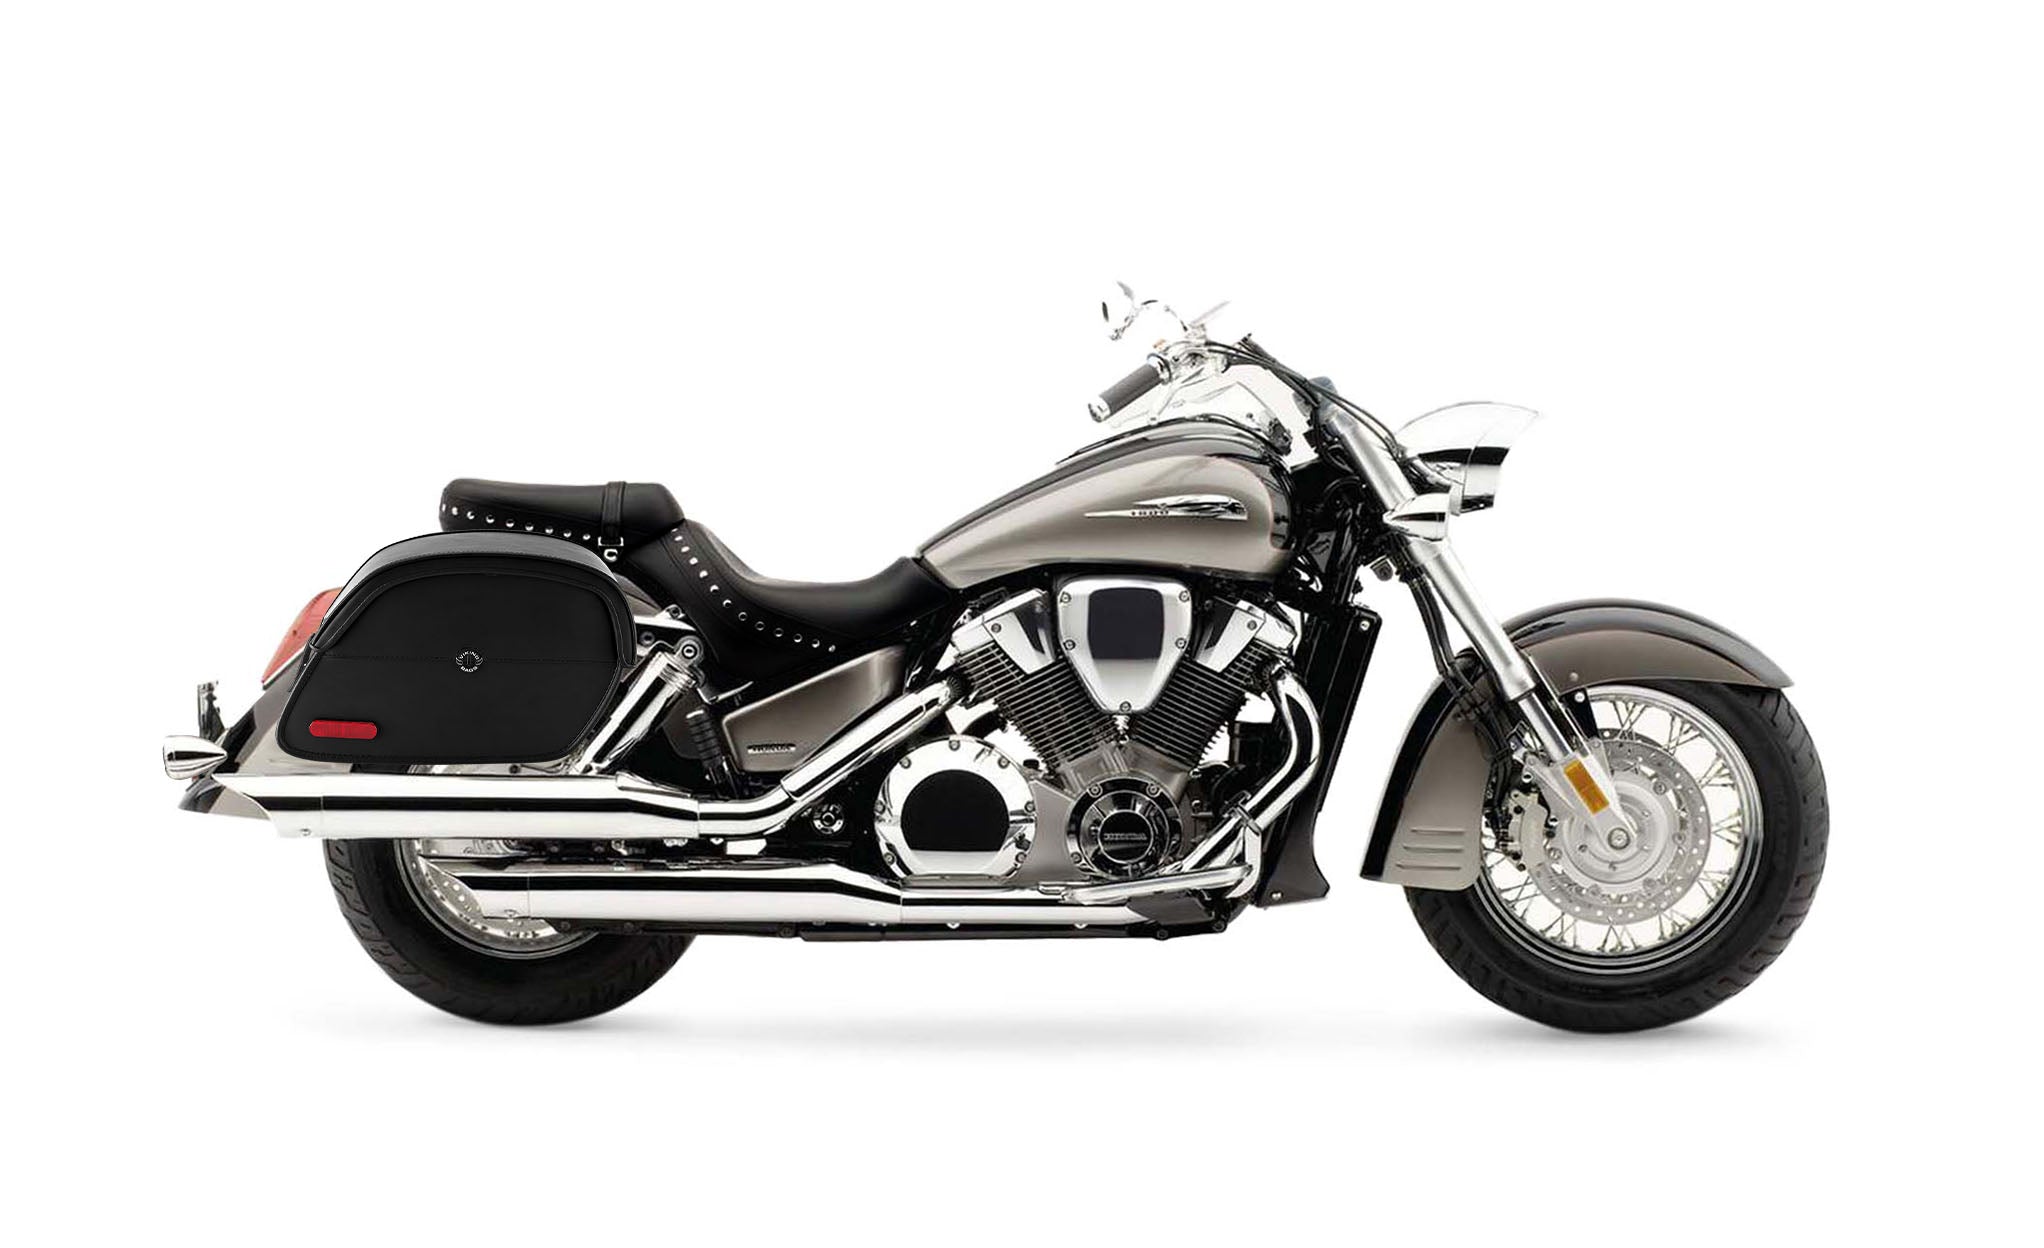 Viking California Large Honda Vtx 1800 S Leather Motorcycle Saddlebags on Bike Photo @expand